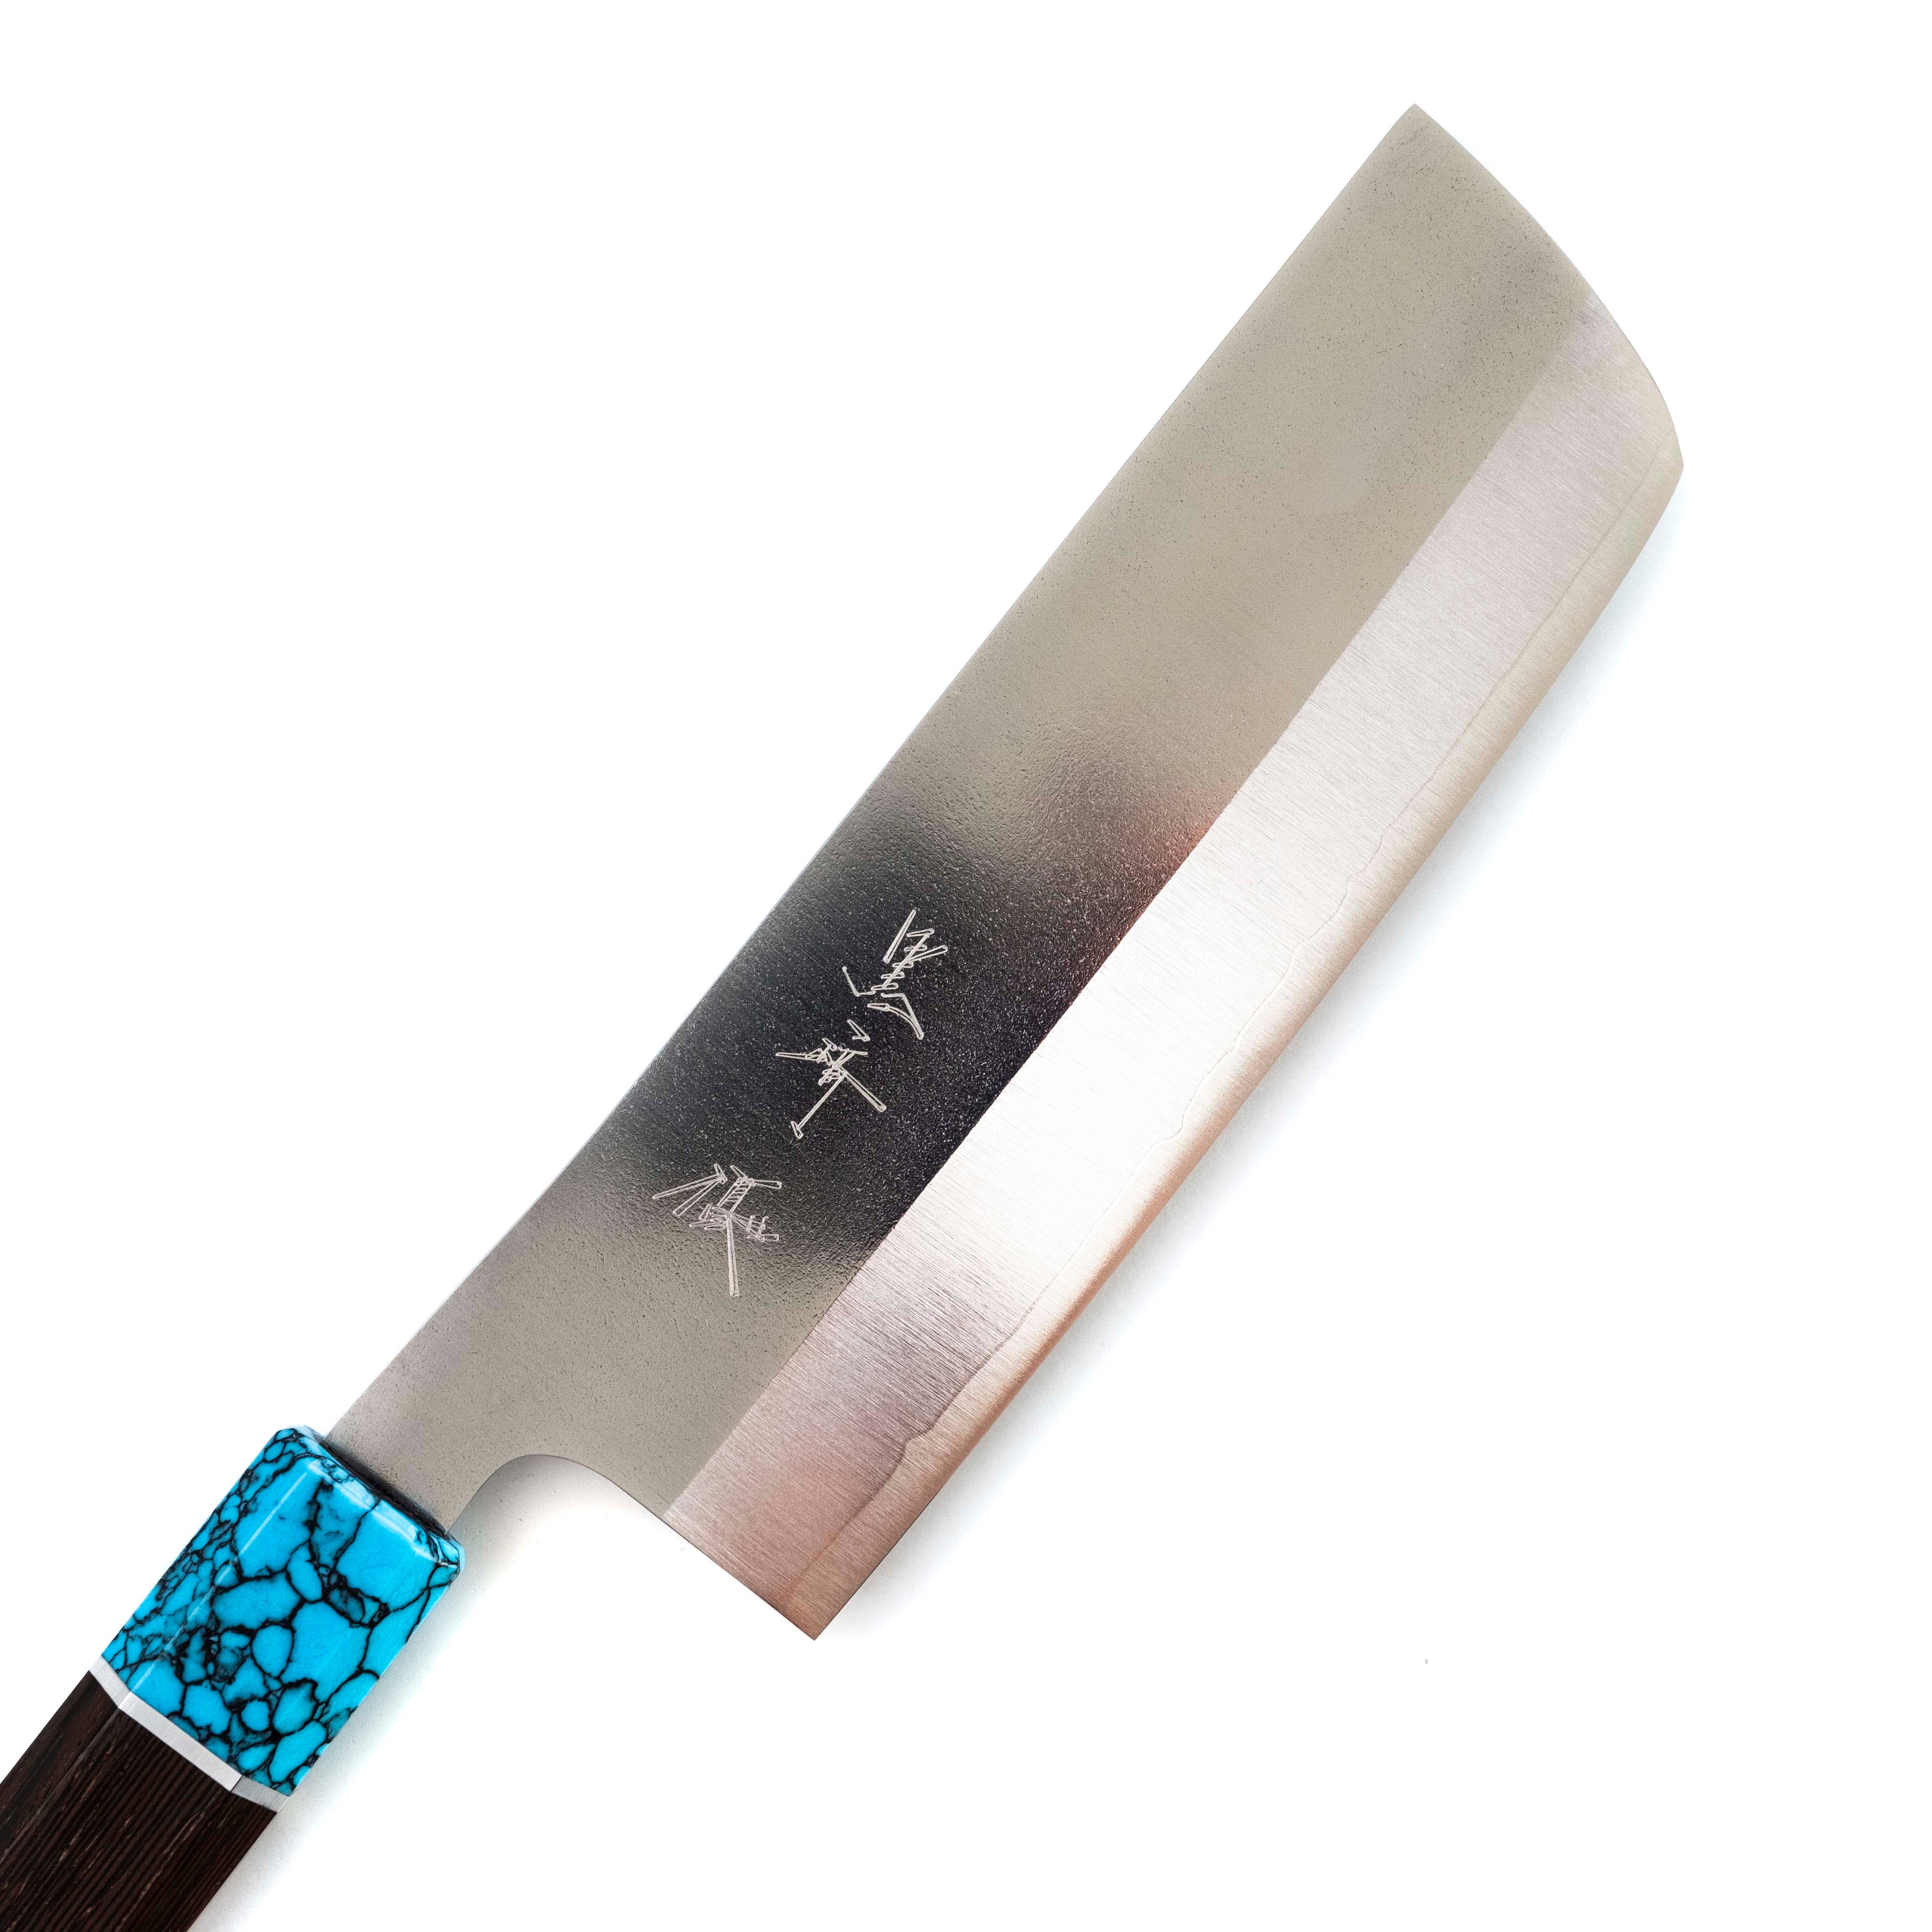 Yu Kurosaki Gekko Nakiri 165 mm (Turquoise Handle)